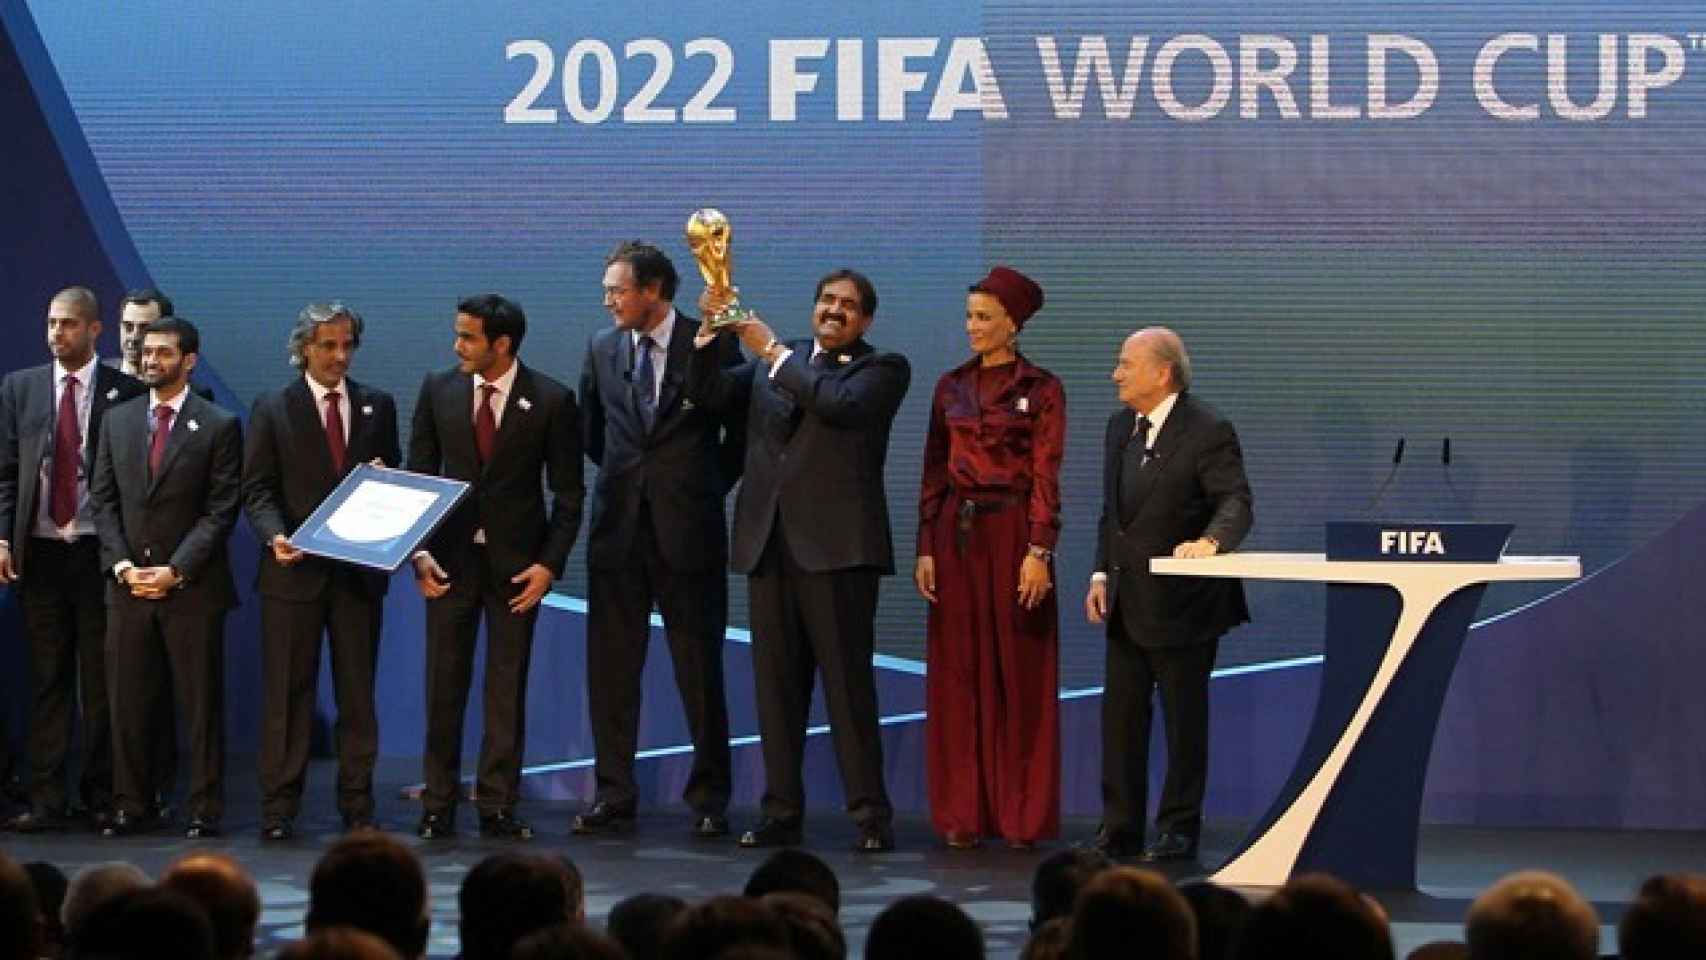 La FIFA anuncia que Catar se lleva el Mundial 2022. Foto: fifa.com